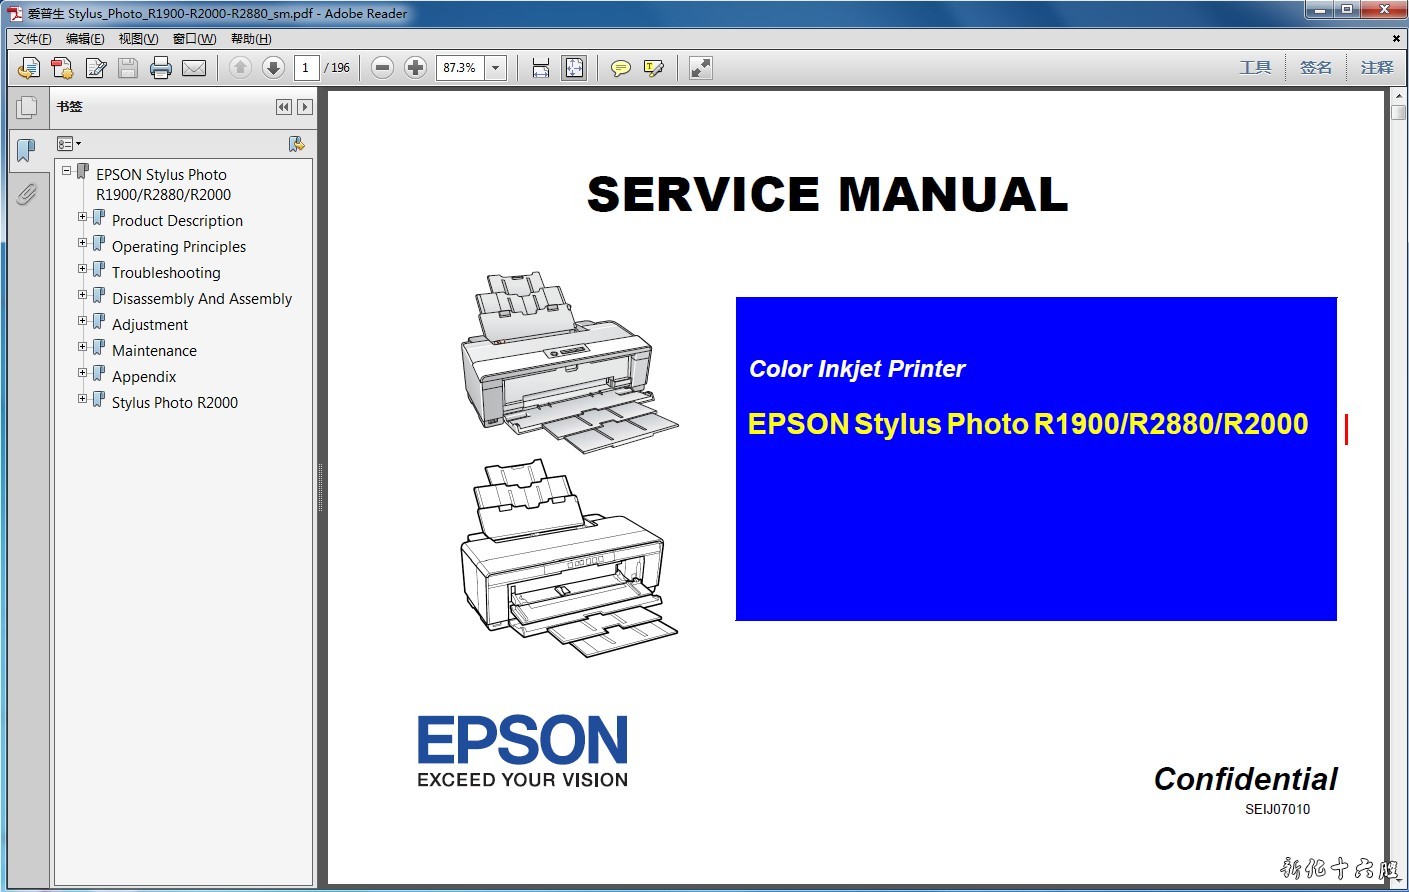 爱普生 EPSON Stylus Photo R1900,R2880,R2000 英文维修手册资料.jpg